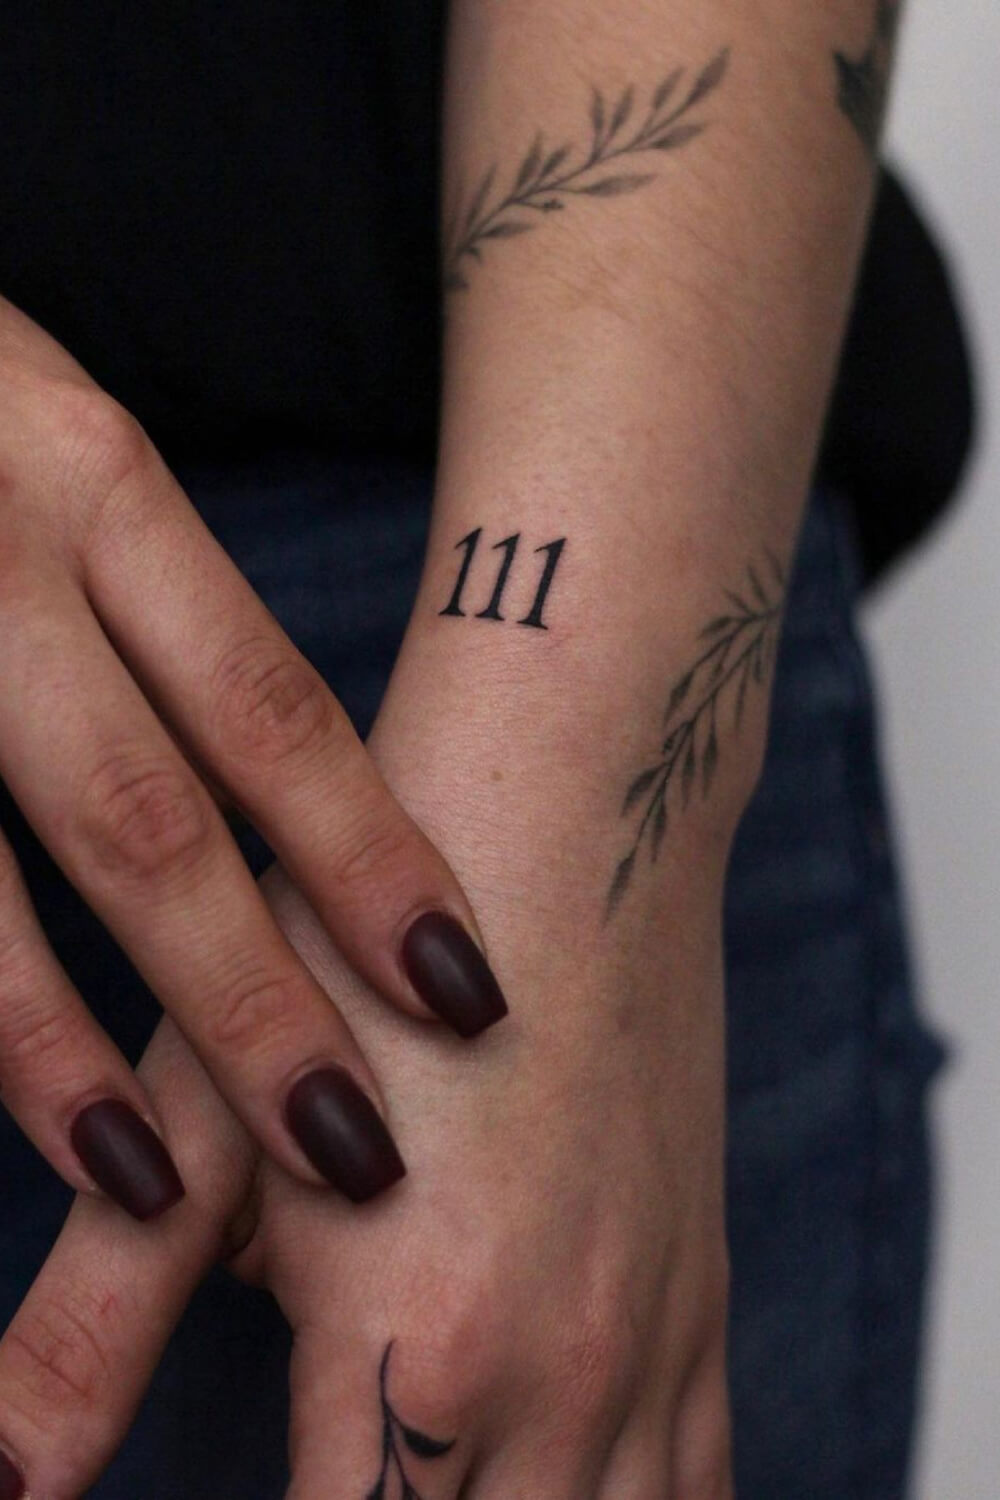 111 Tattoo